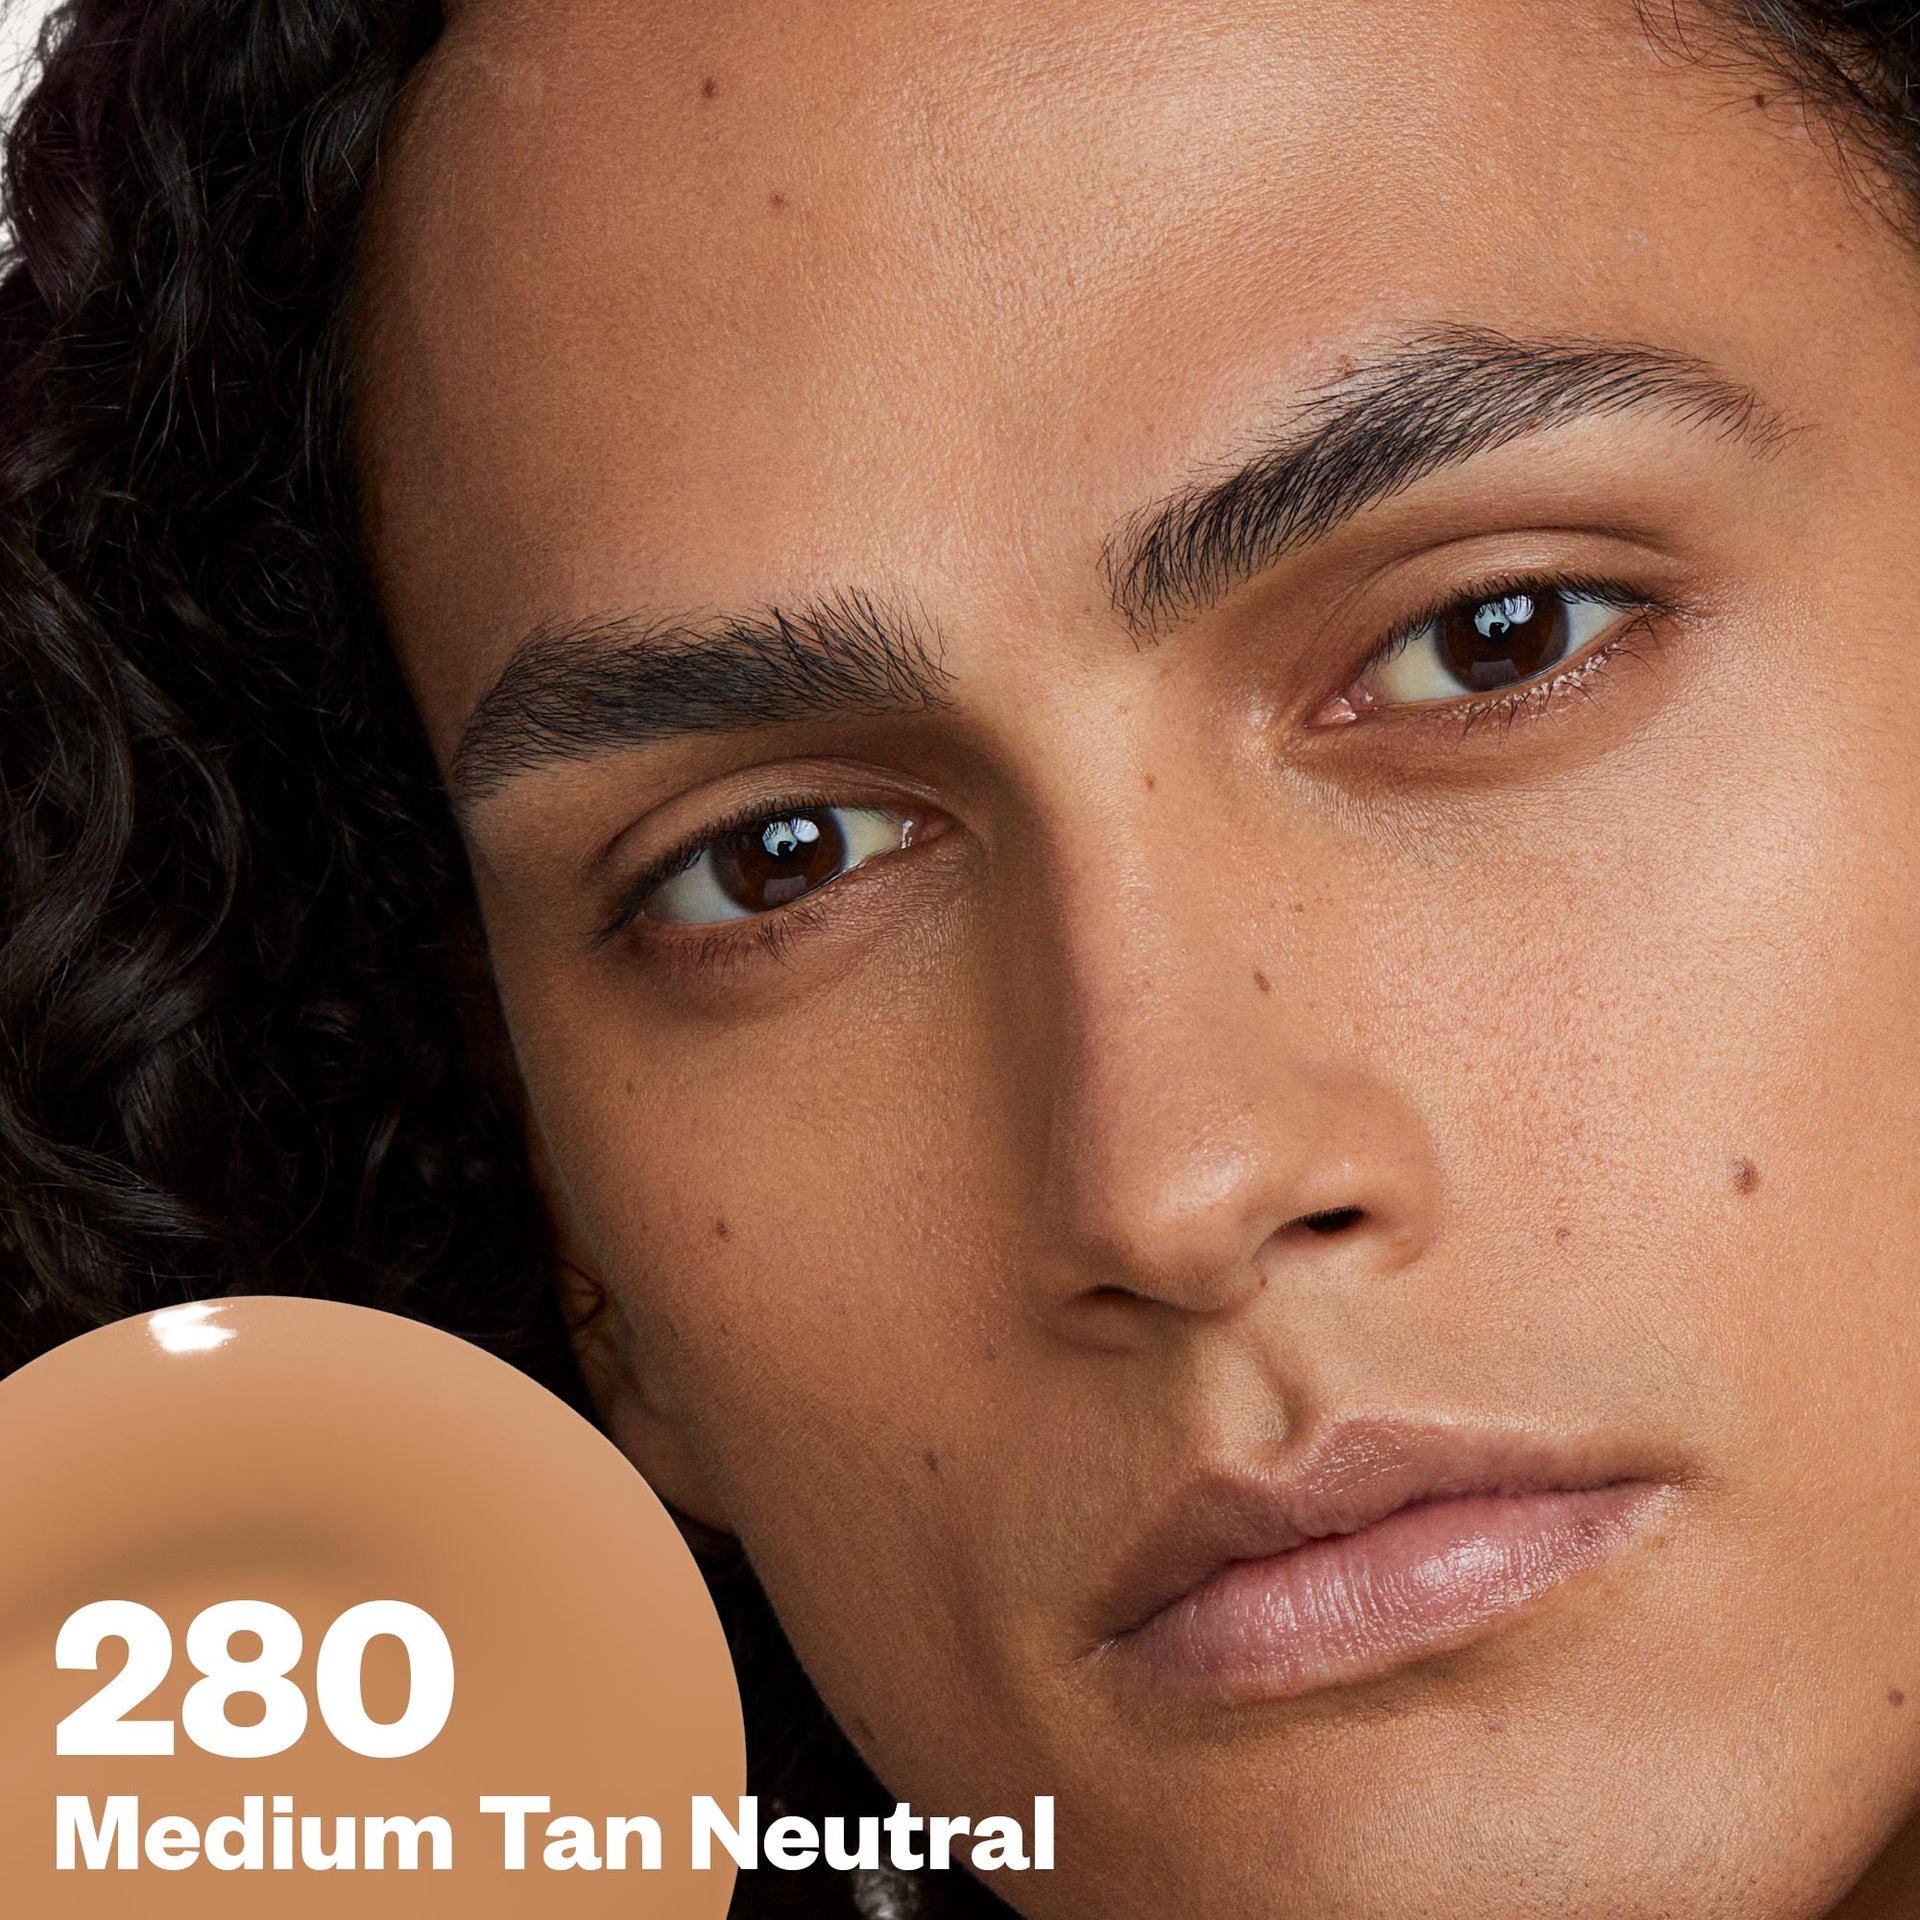 Medium Tan Neutral 280 Improving Foundation SPF 25